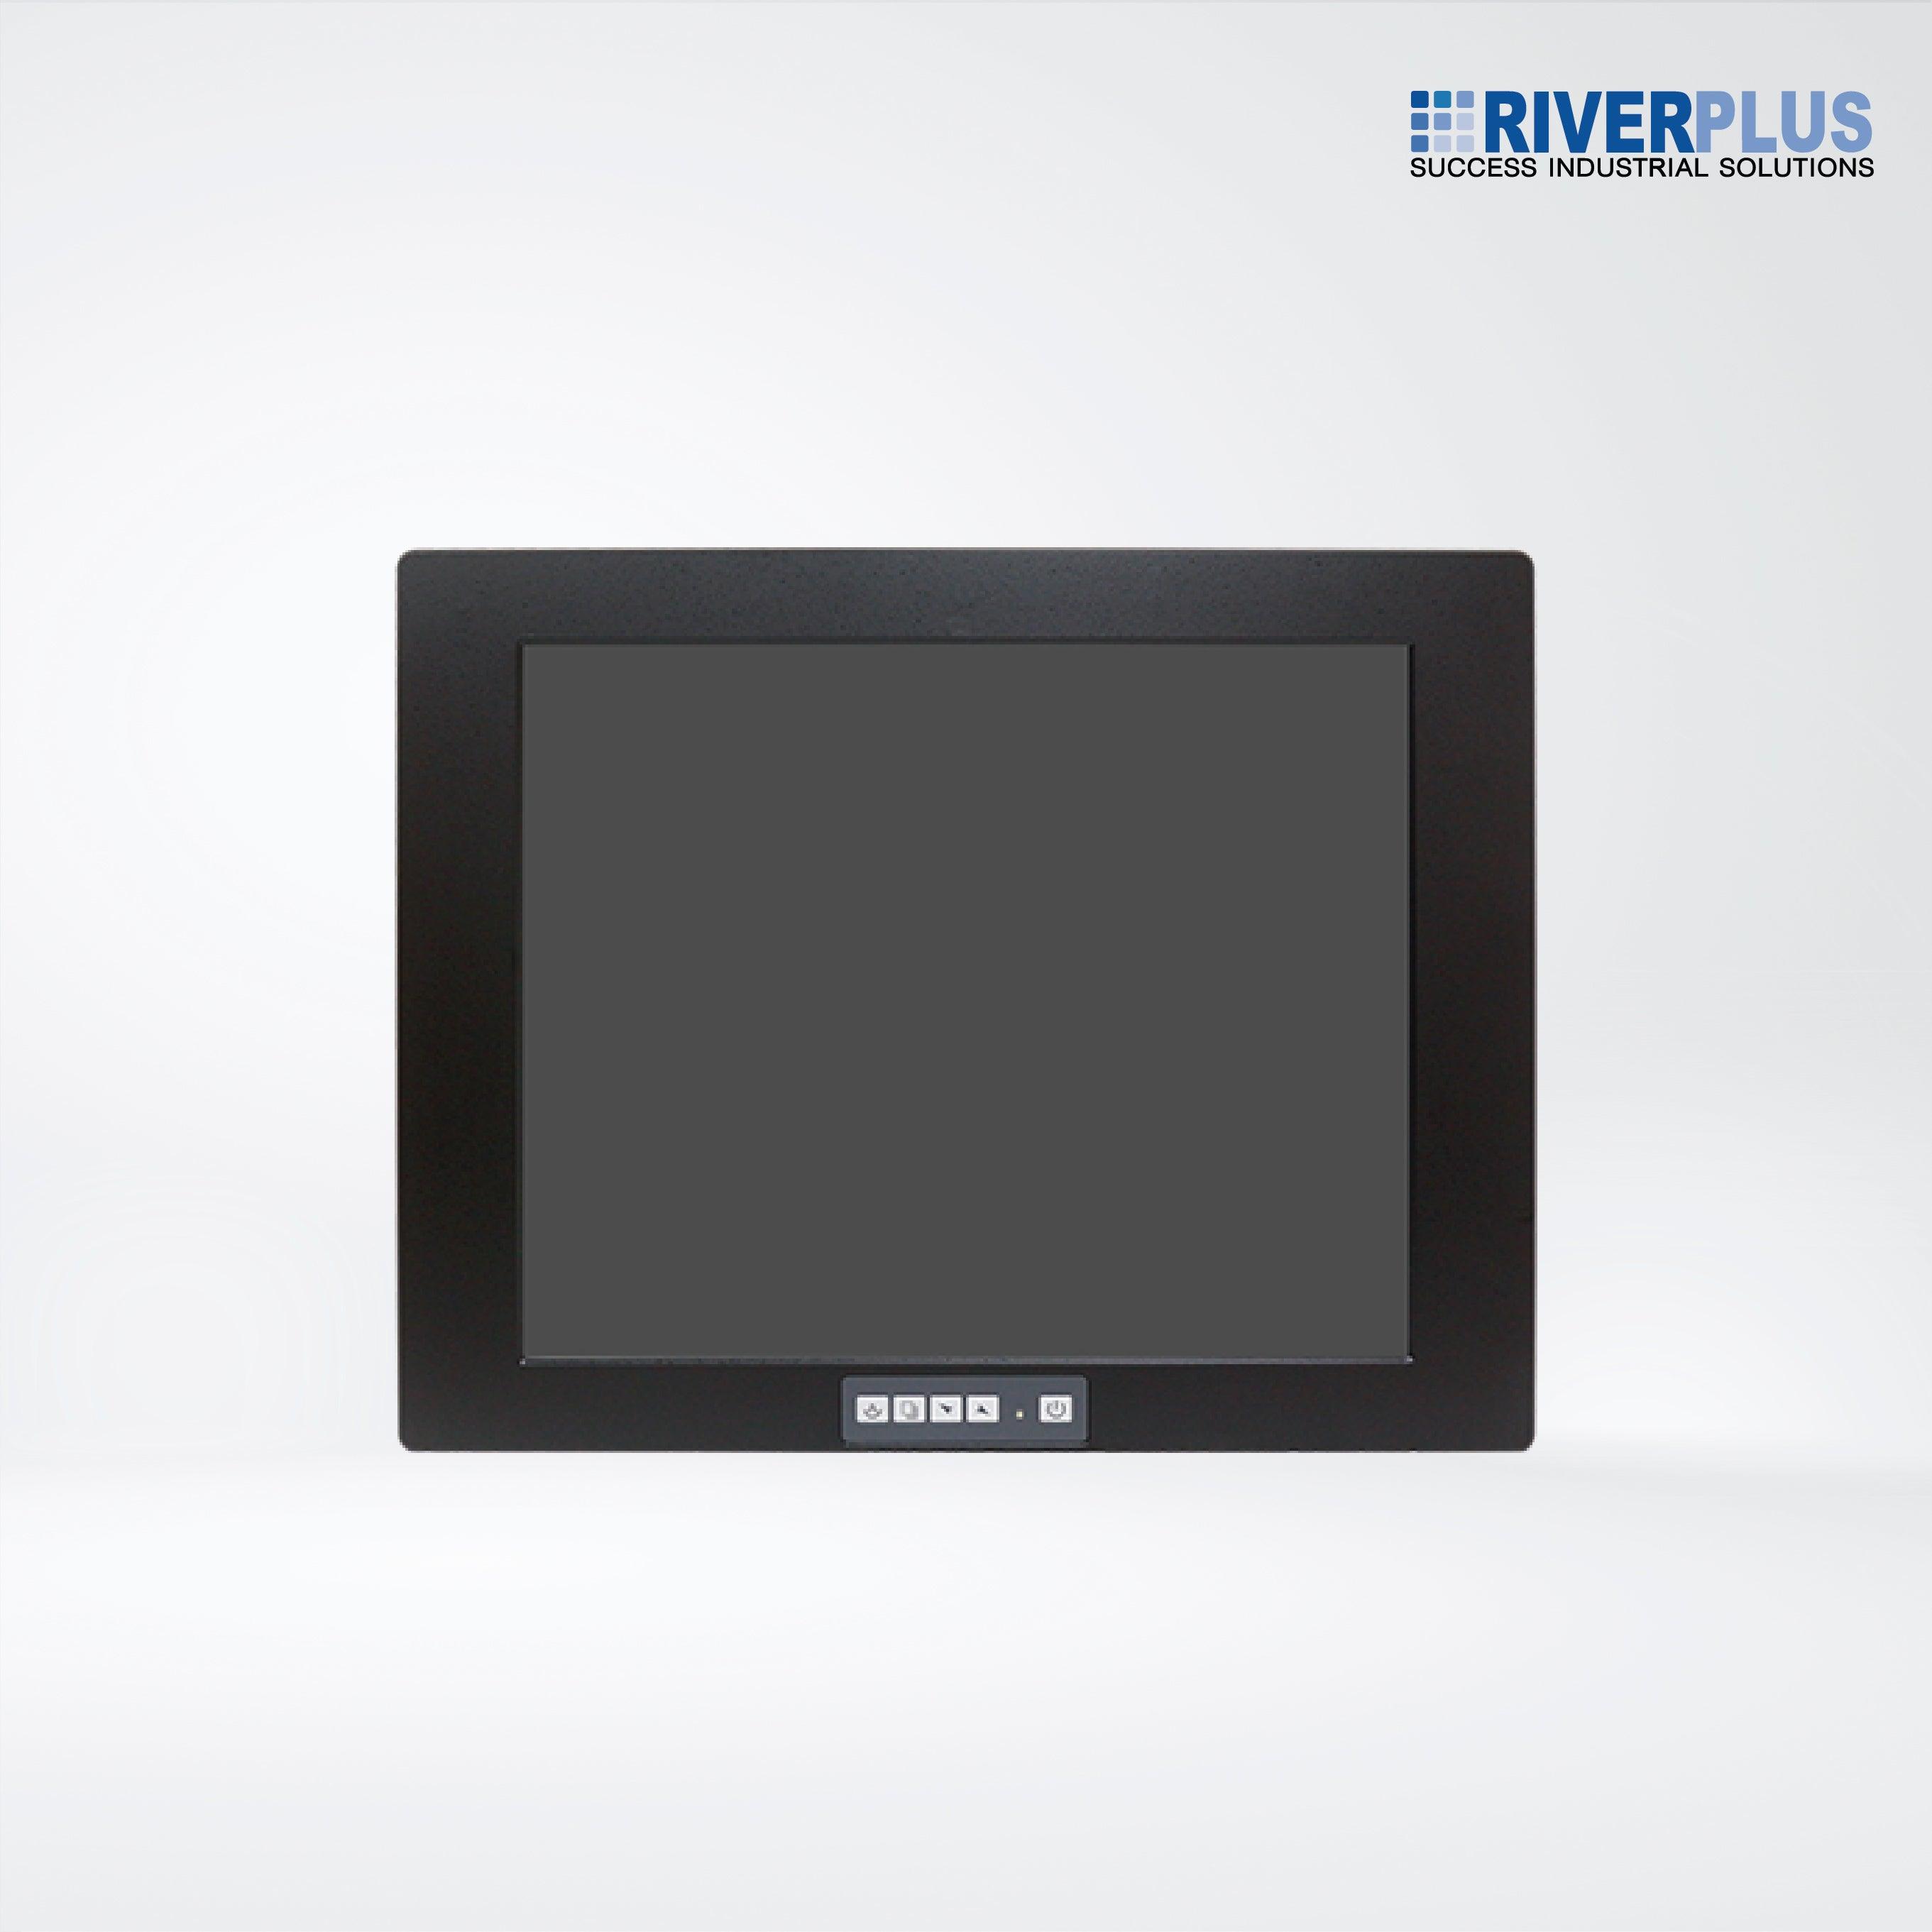 ADP-1174A 17” Steel Enclosure LCD Display - Riverplus